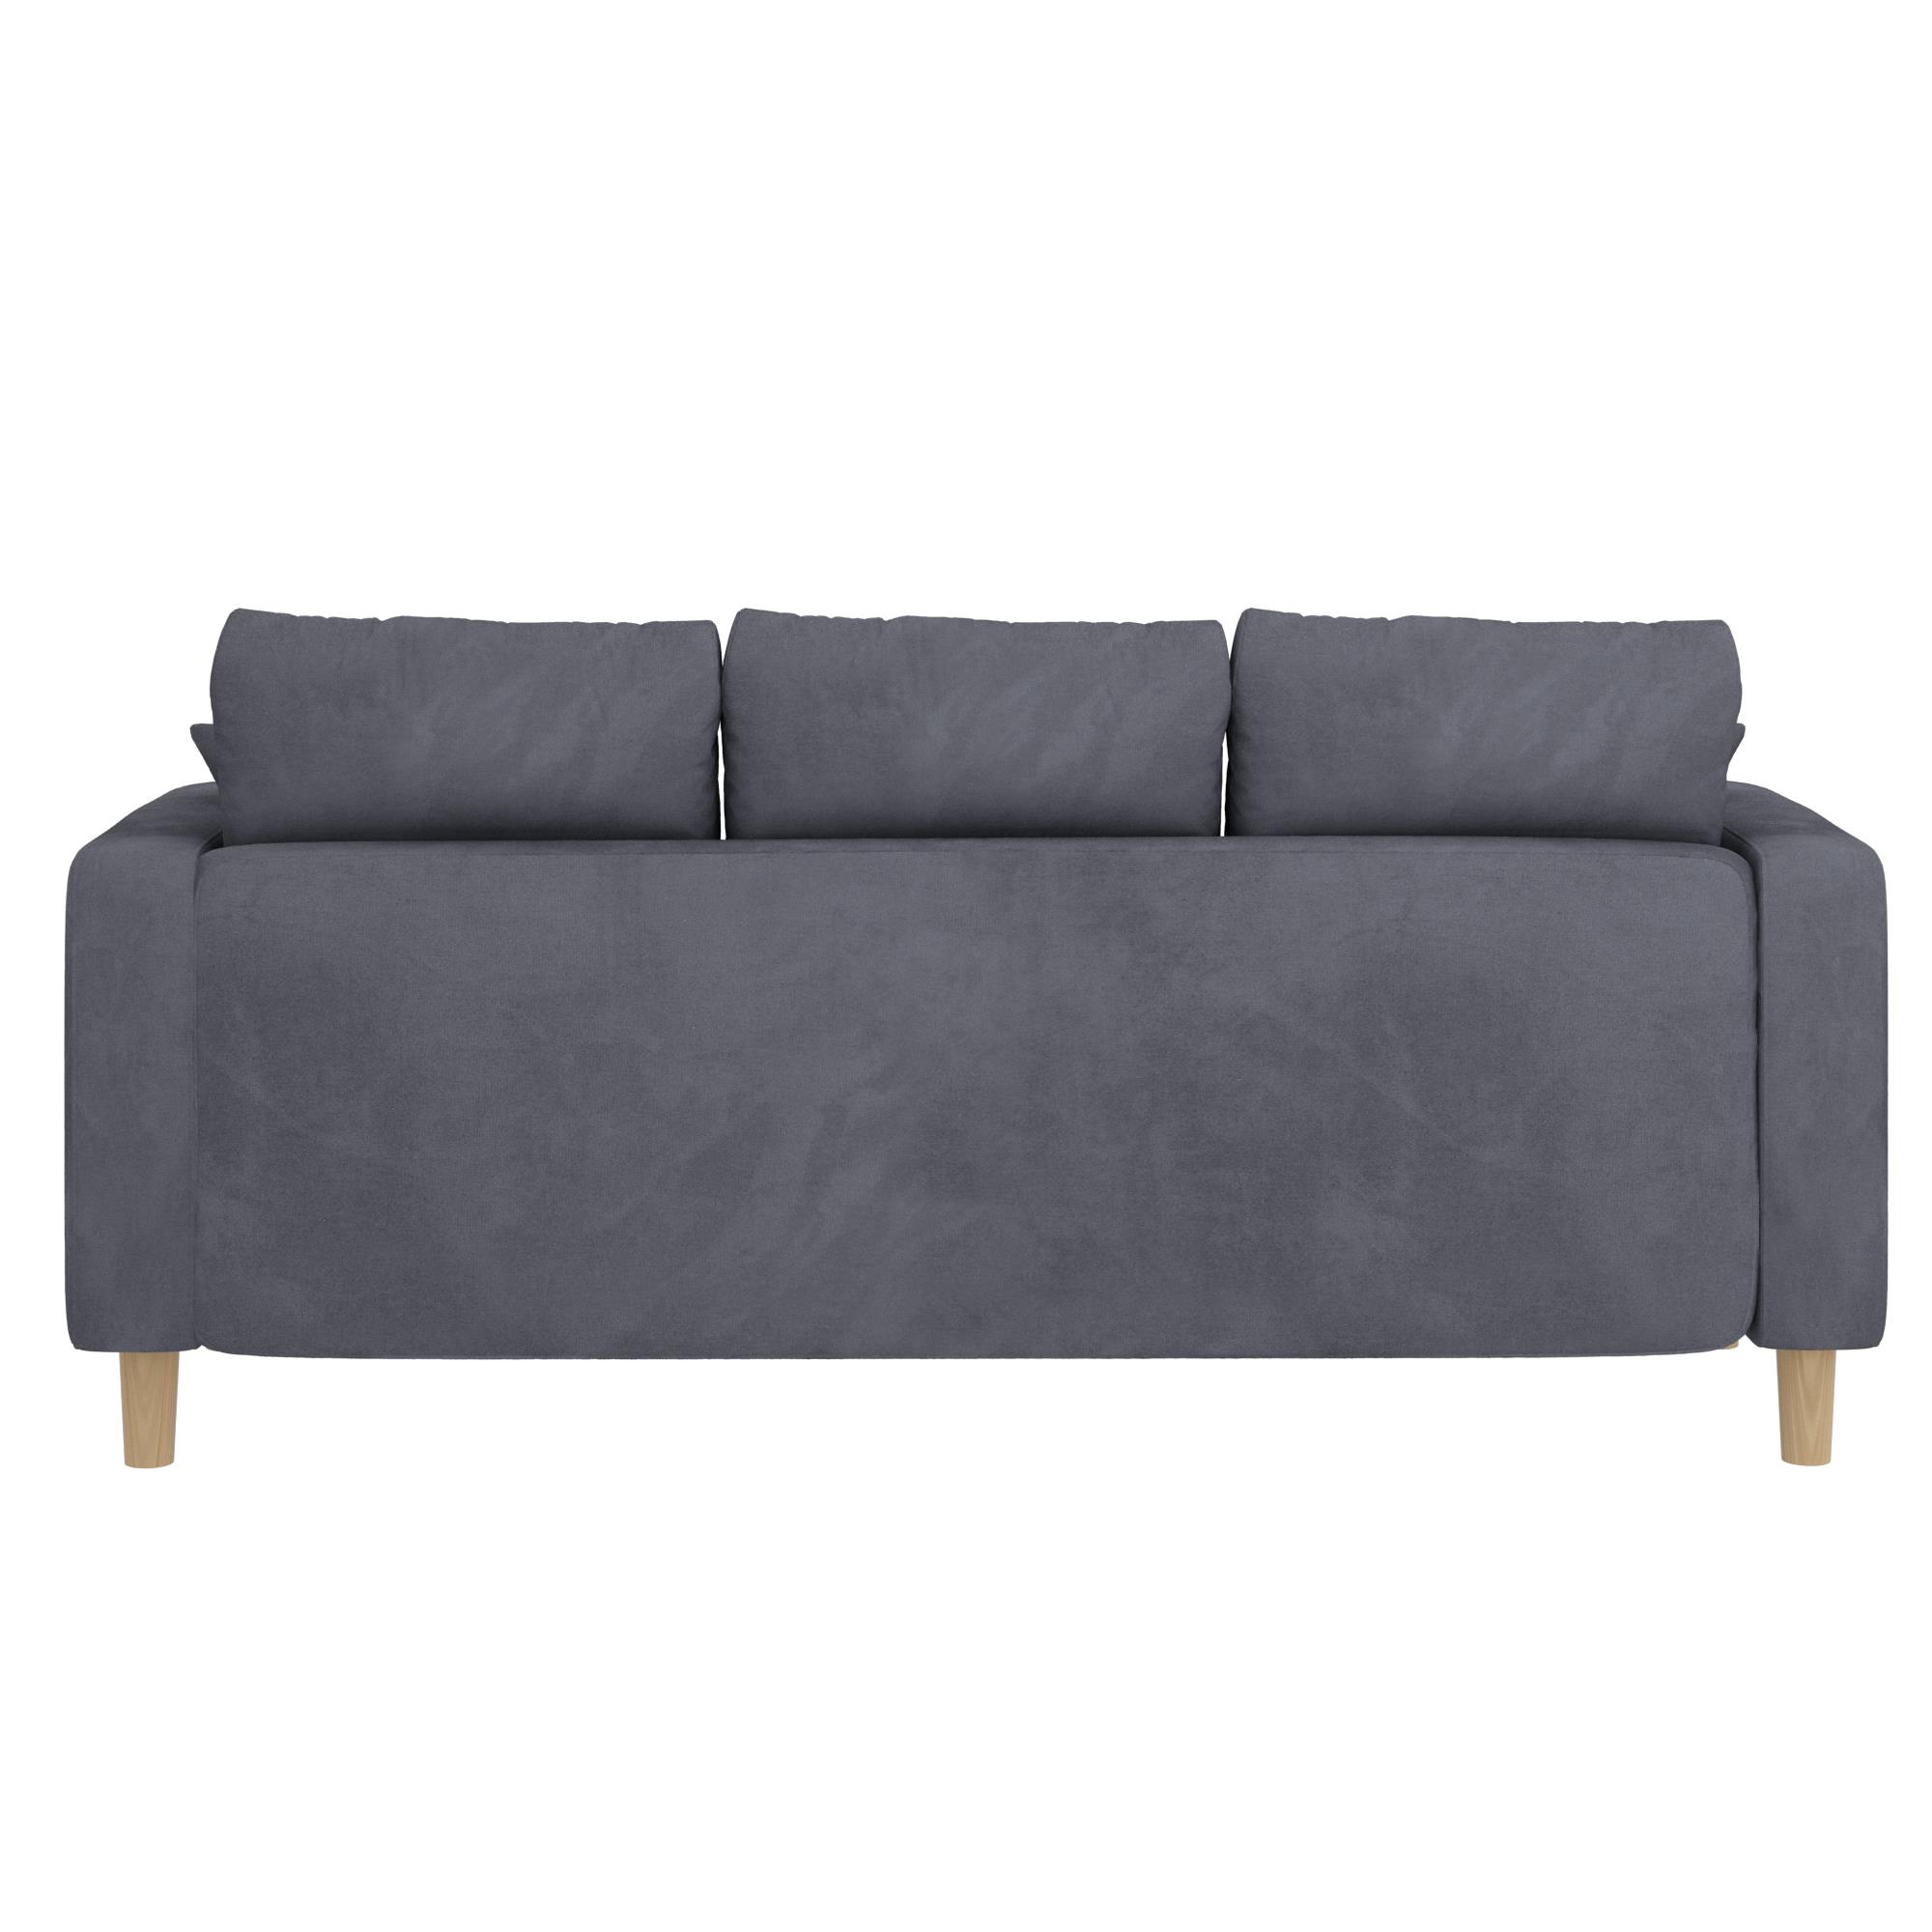 ספה תלת מושבית דגם ליסבון צבע אפור